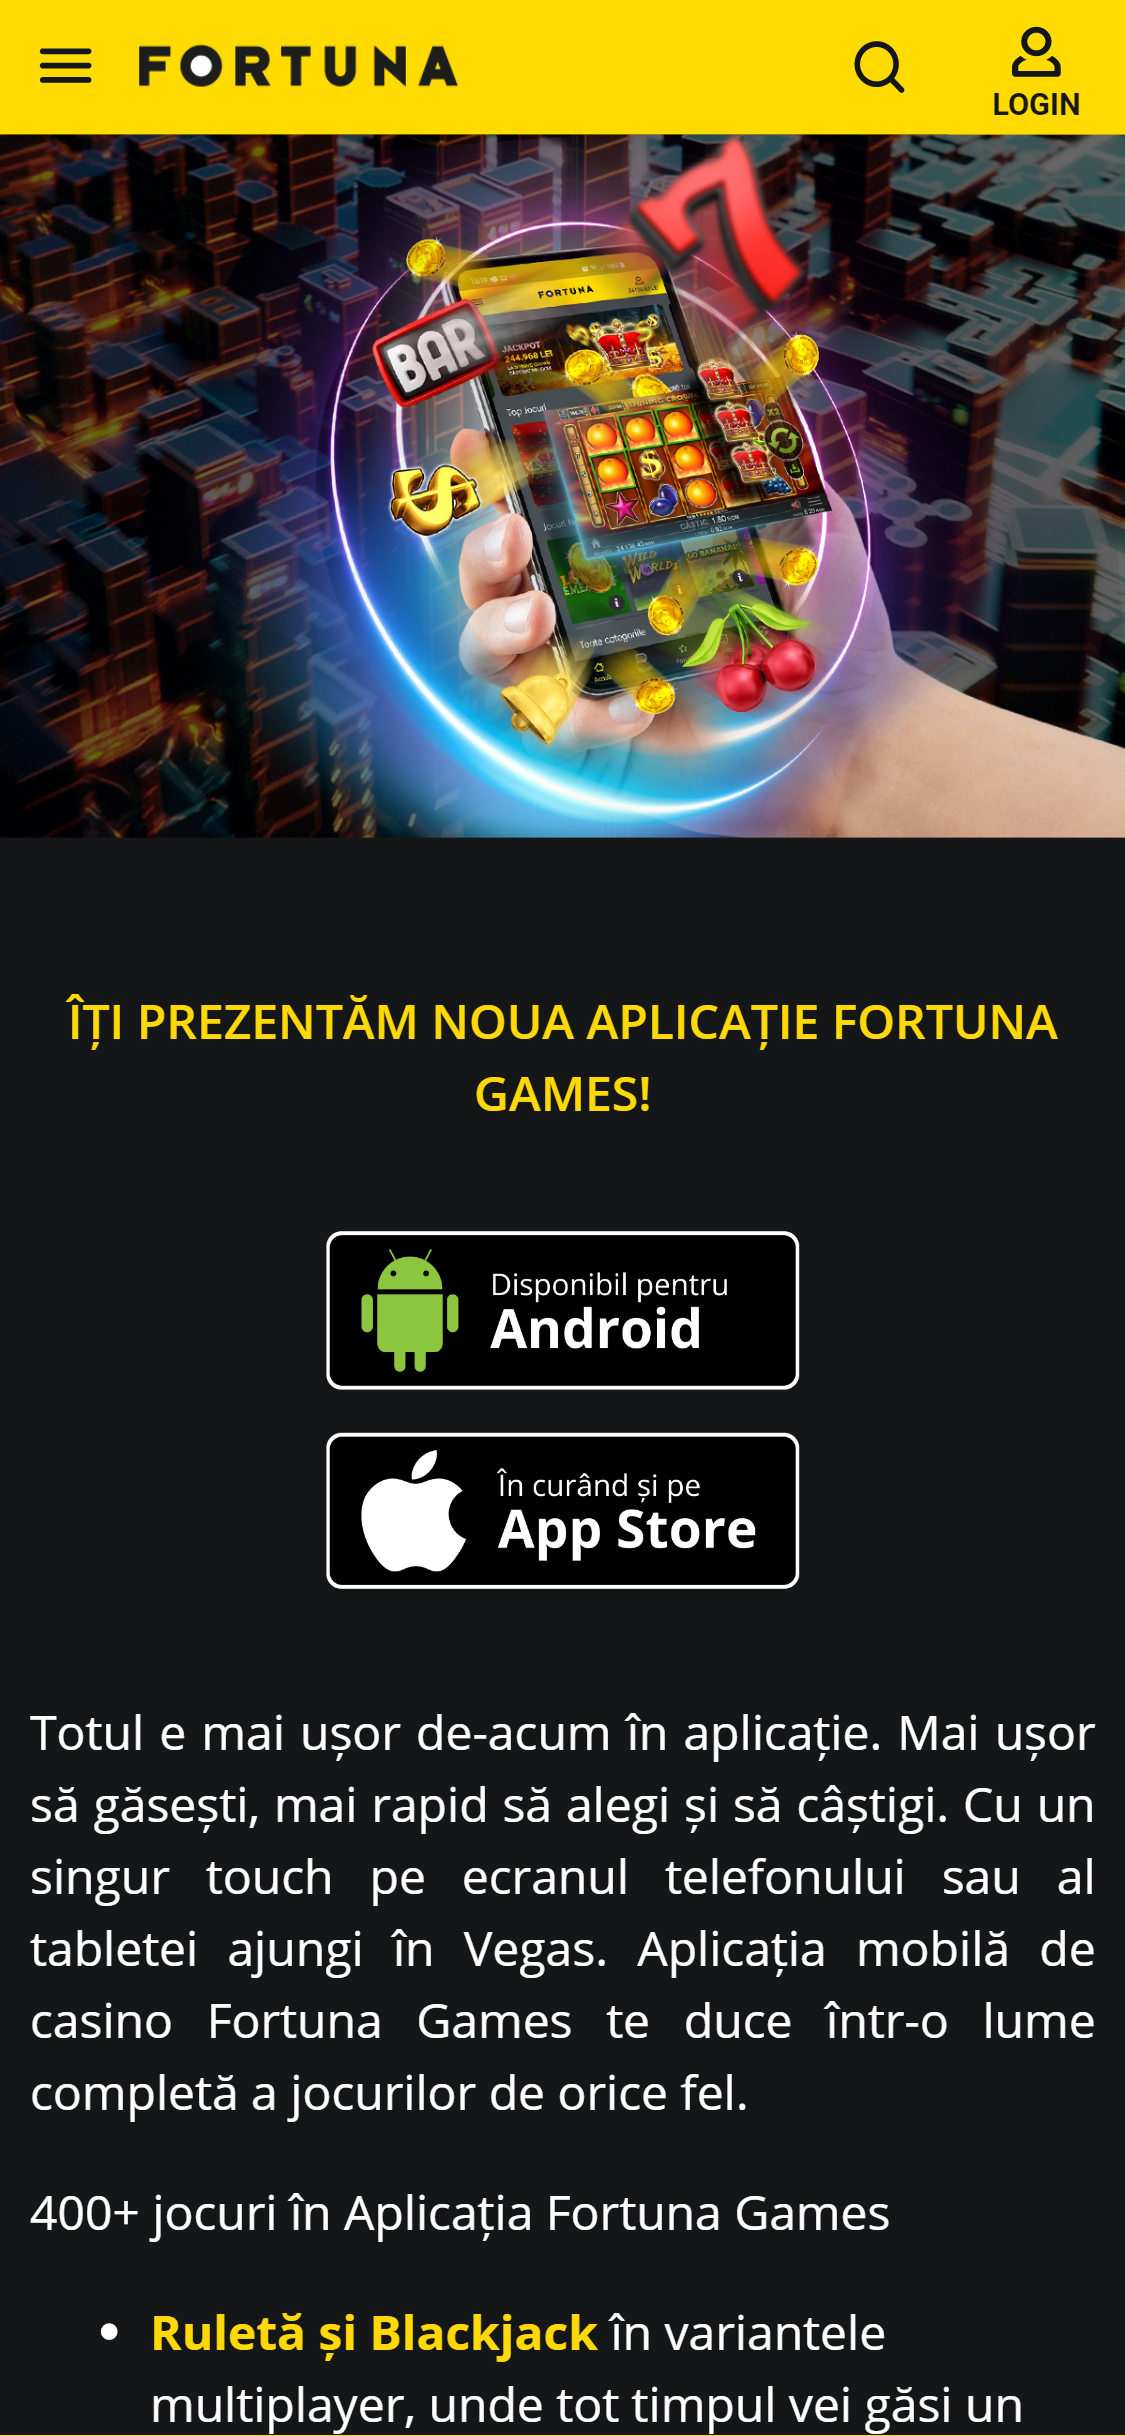 eFortuna Casino Mobile App Review